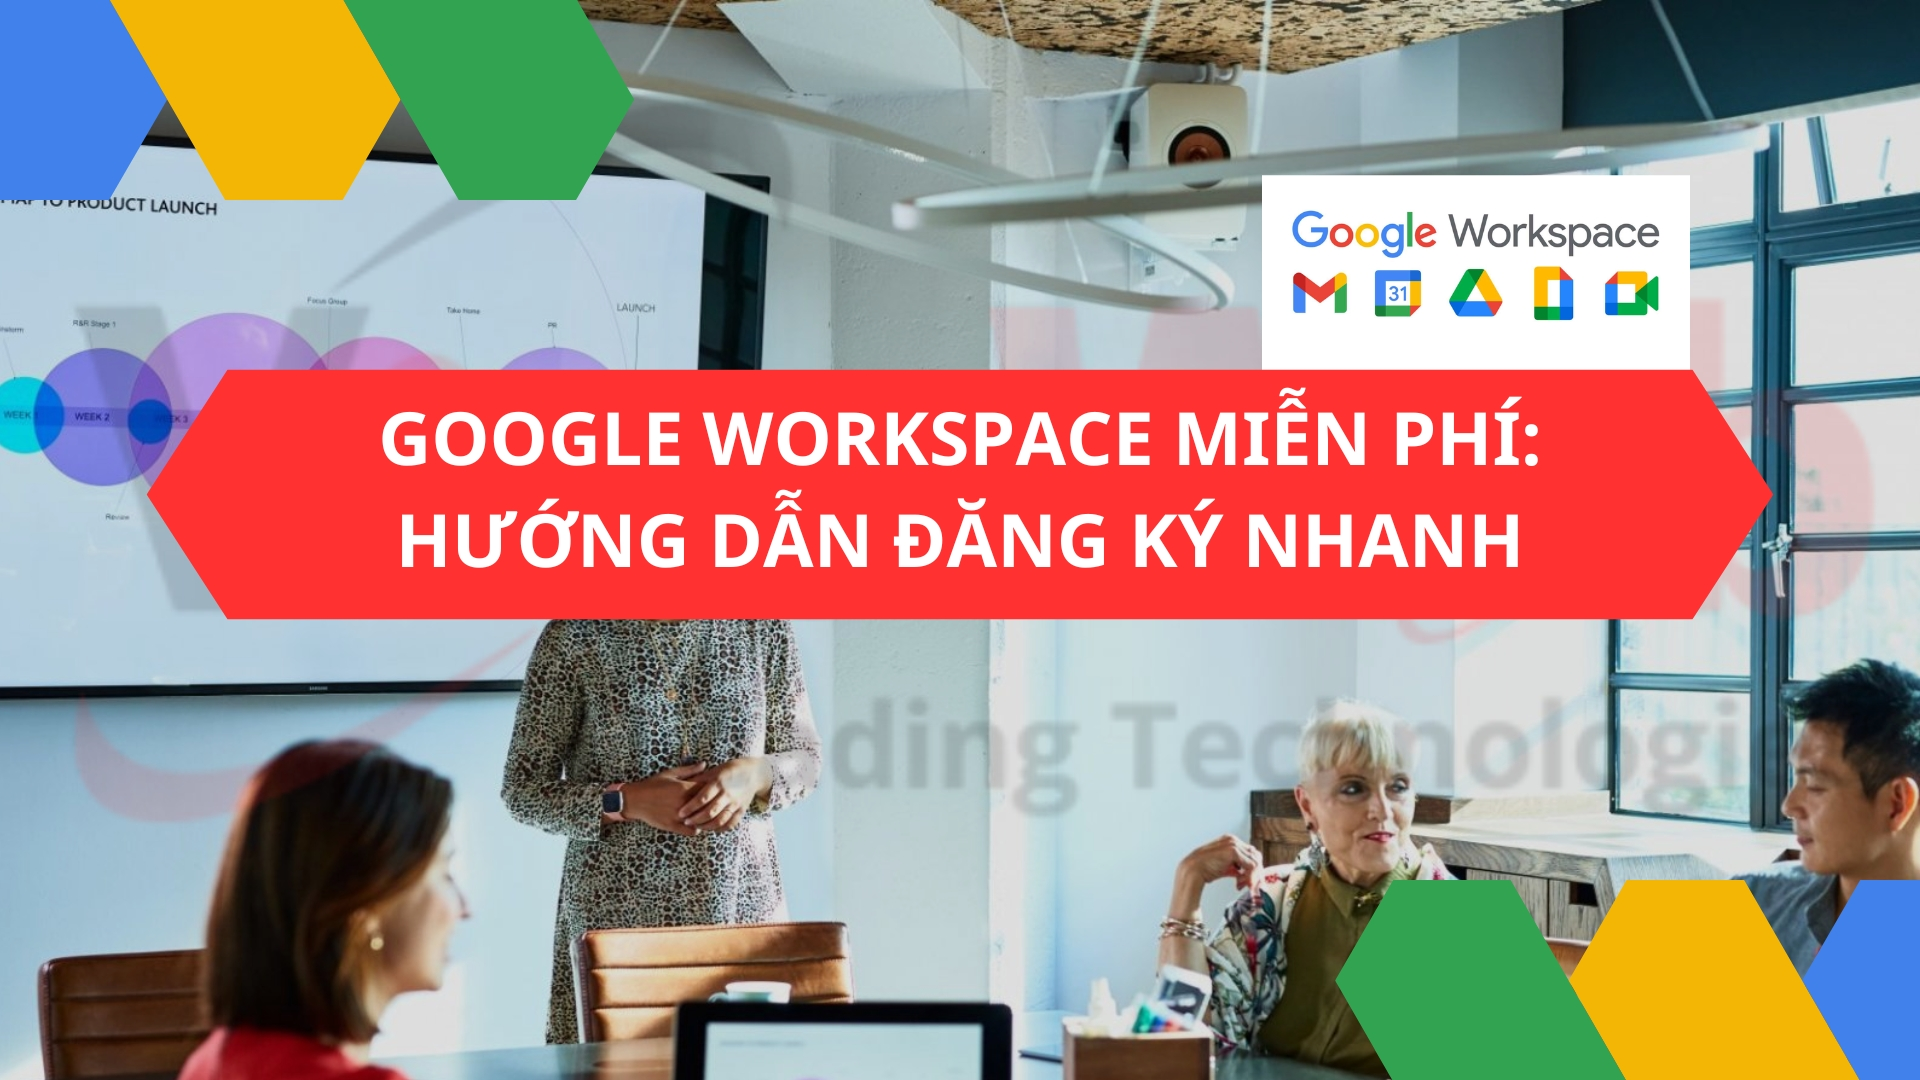 Google Workspace miễn phí: Hướng dẫn đăng ký nhanh